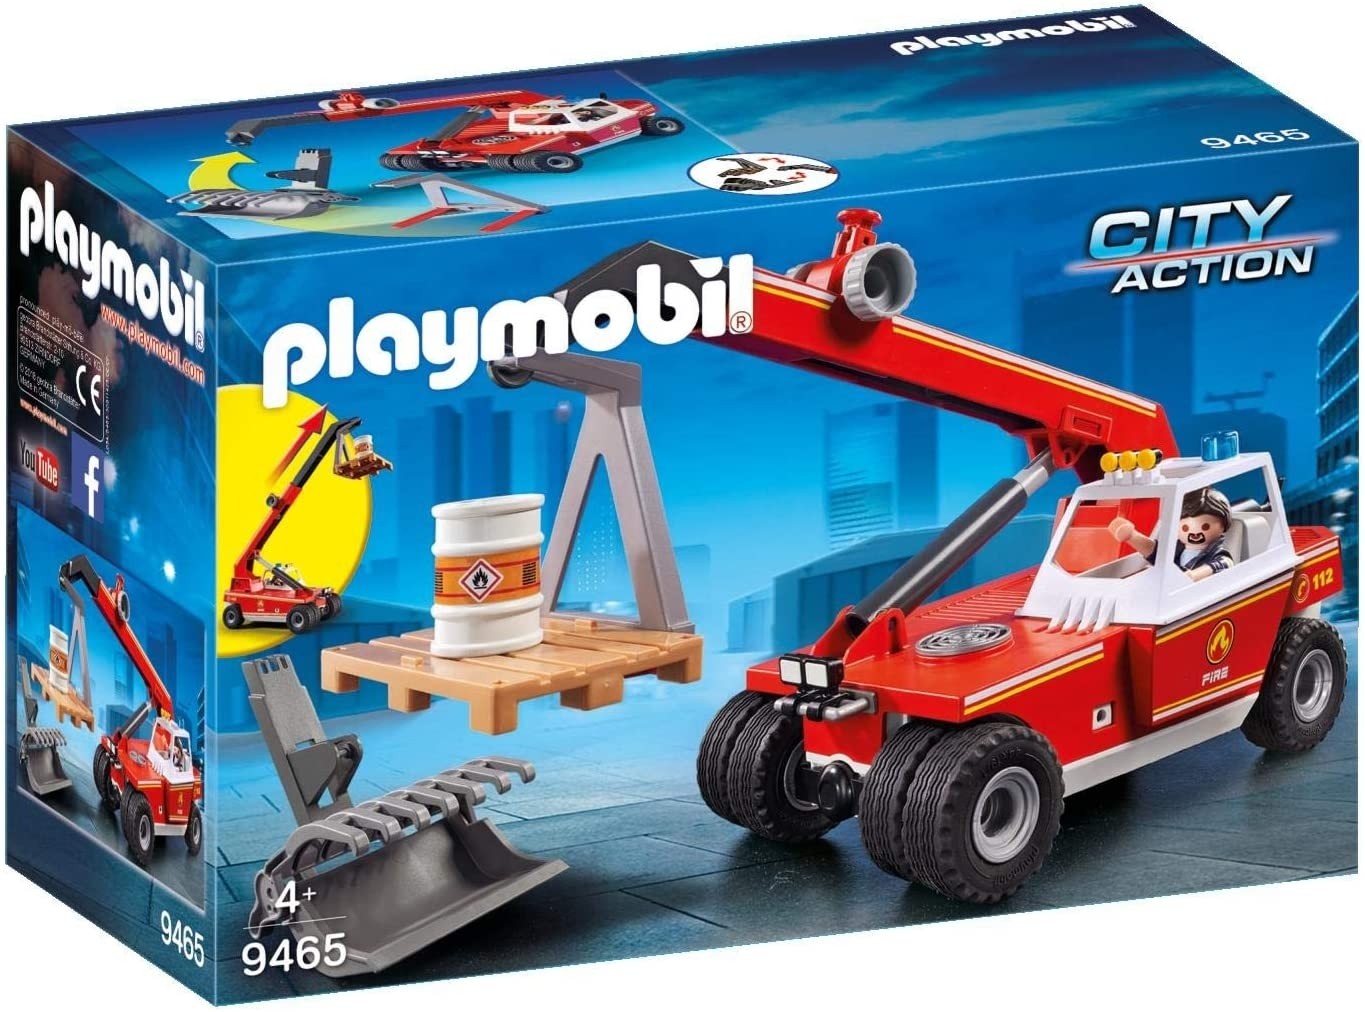 Playmobil City Action veicolo con braccio telescopico